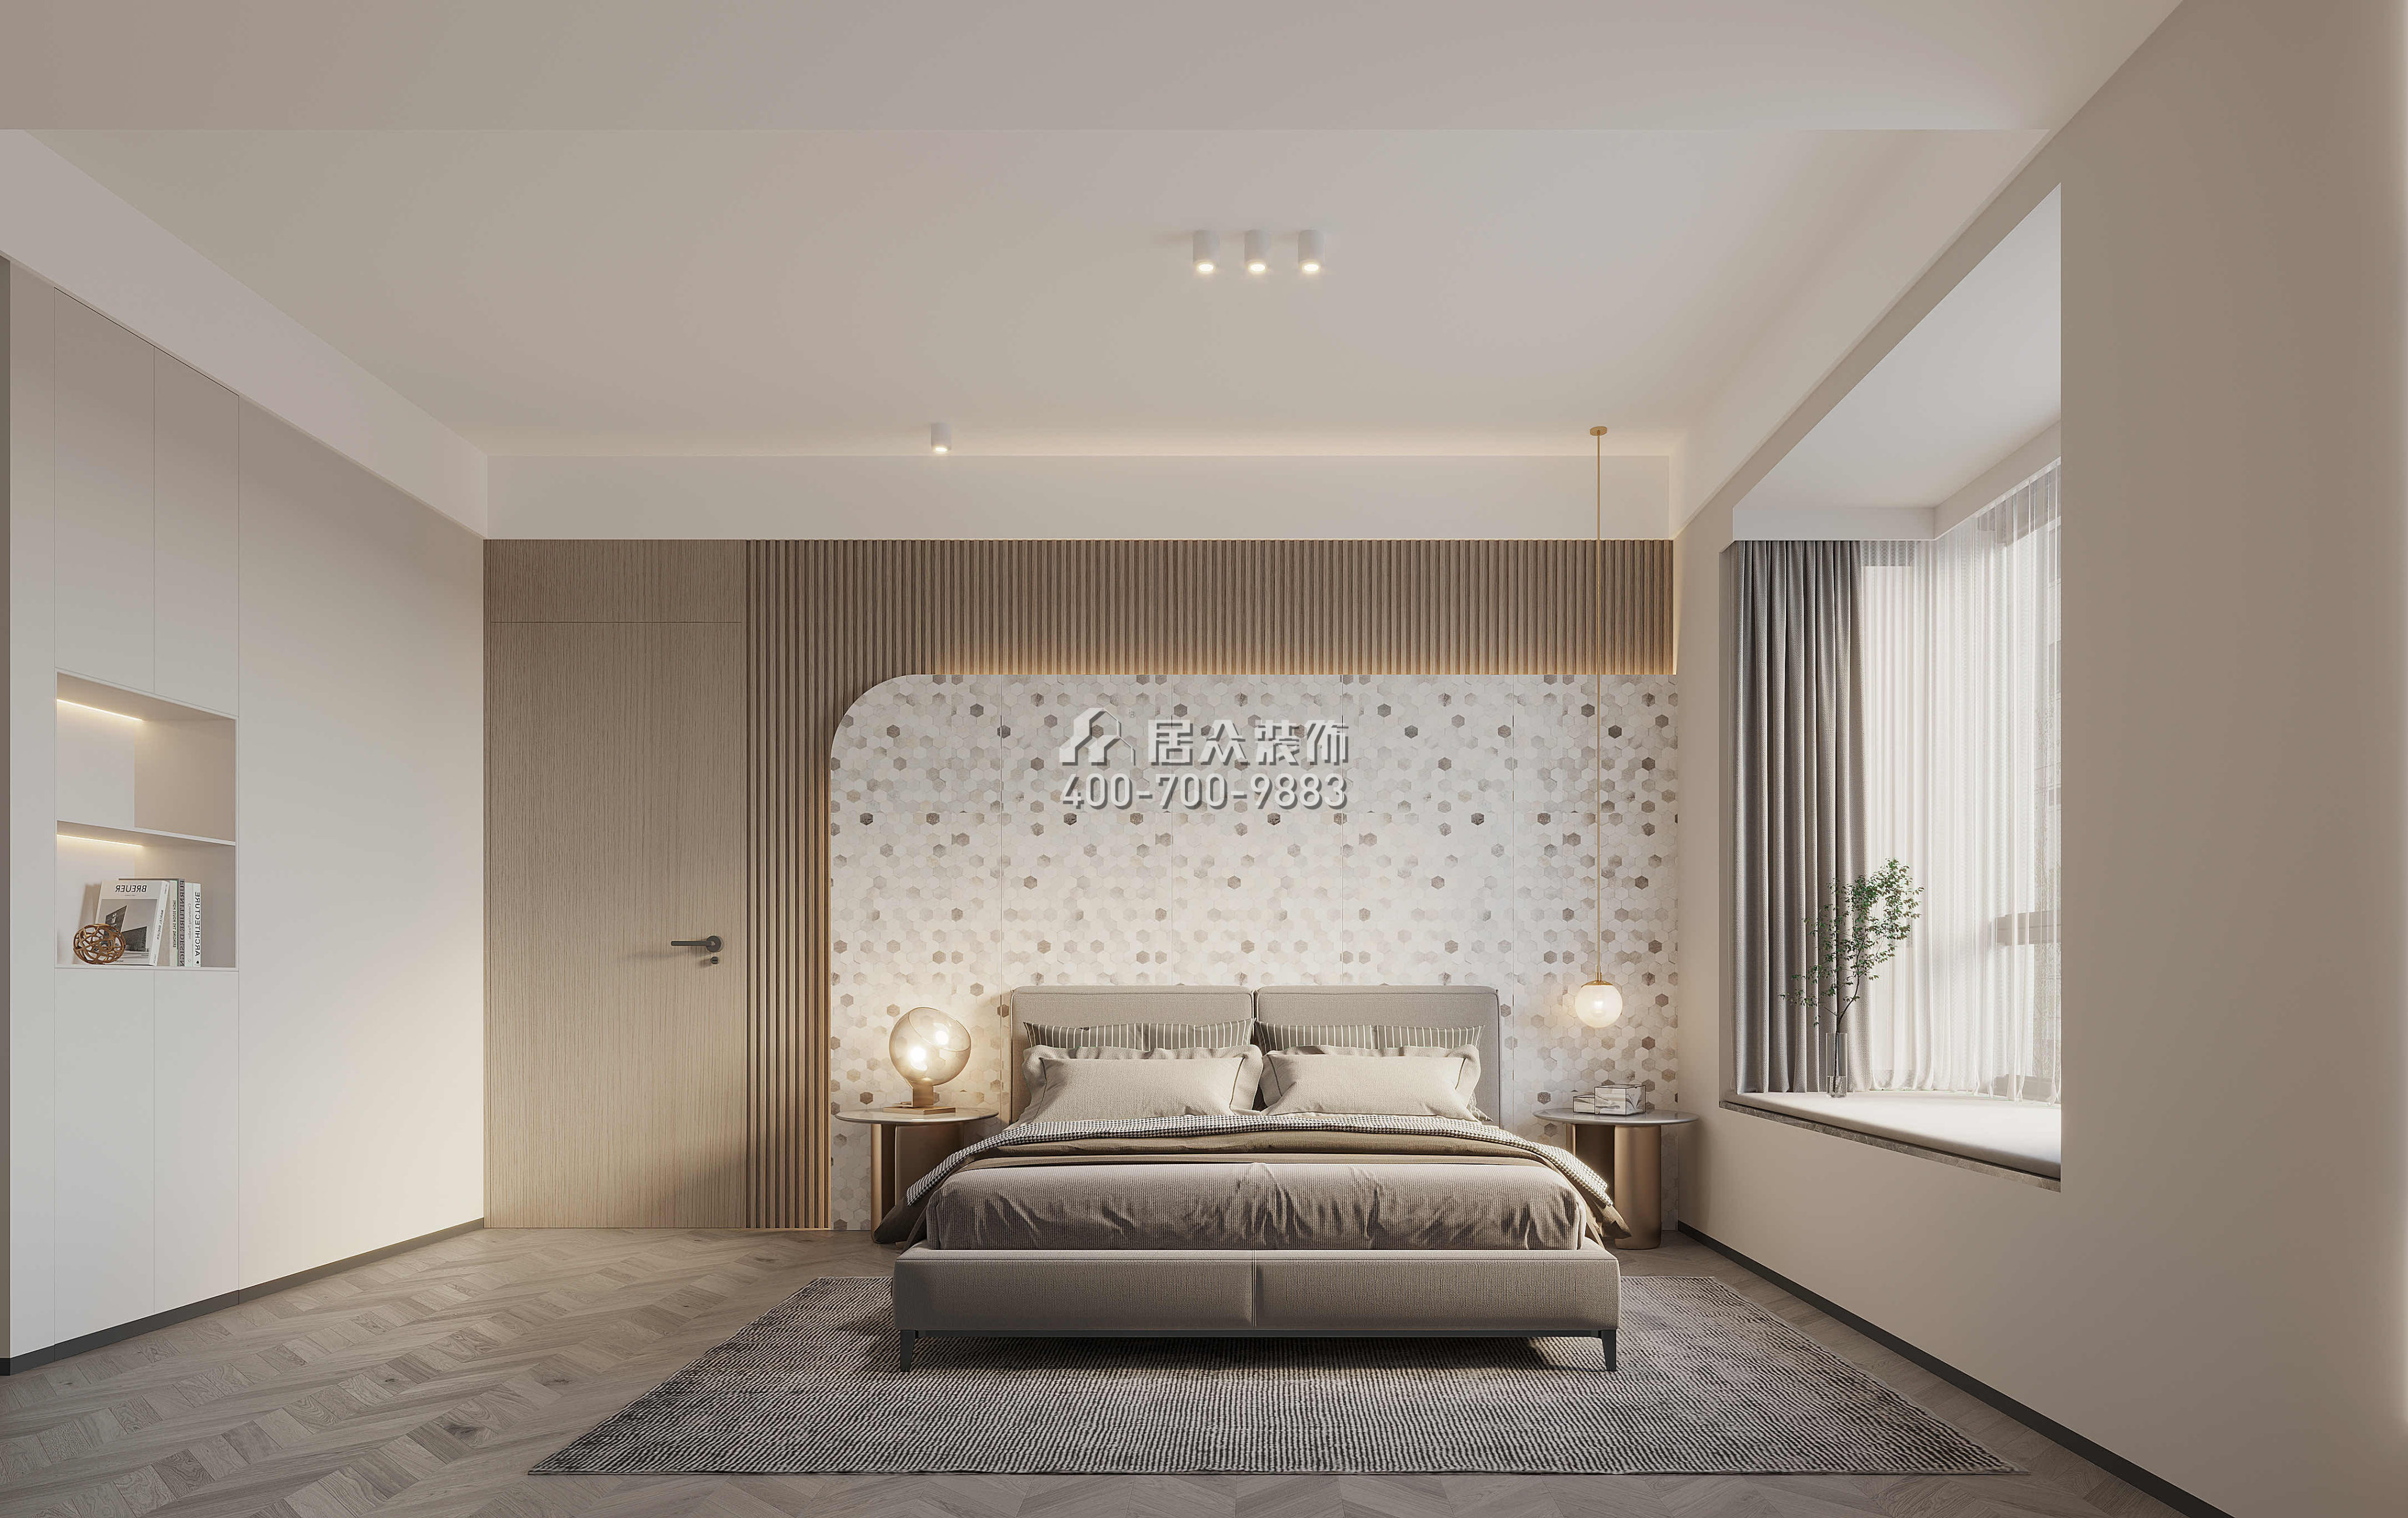 發展興苑120平方米現代簡約風格平層戶型臥室裝修效果圖